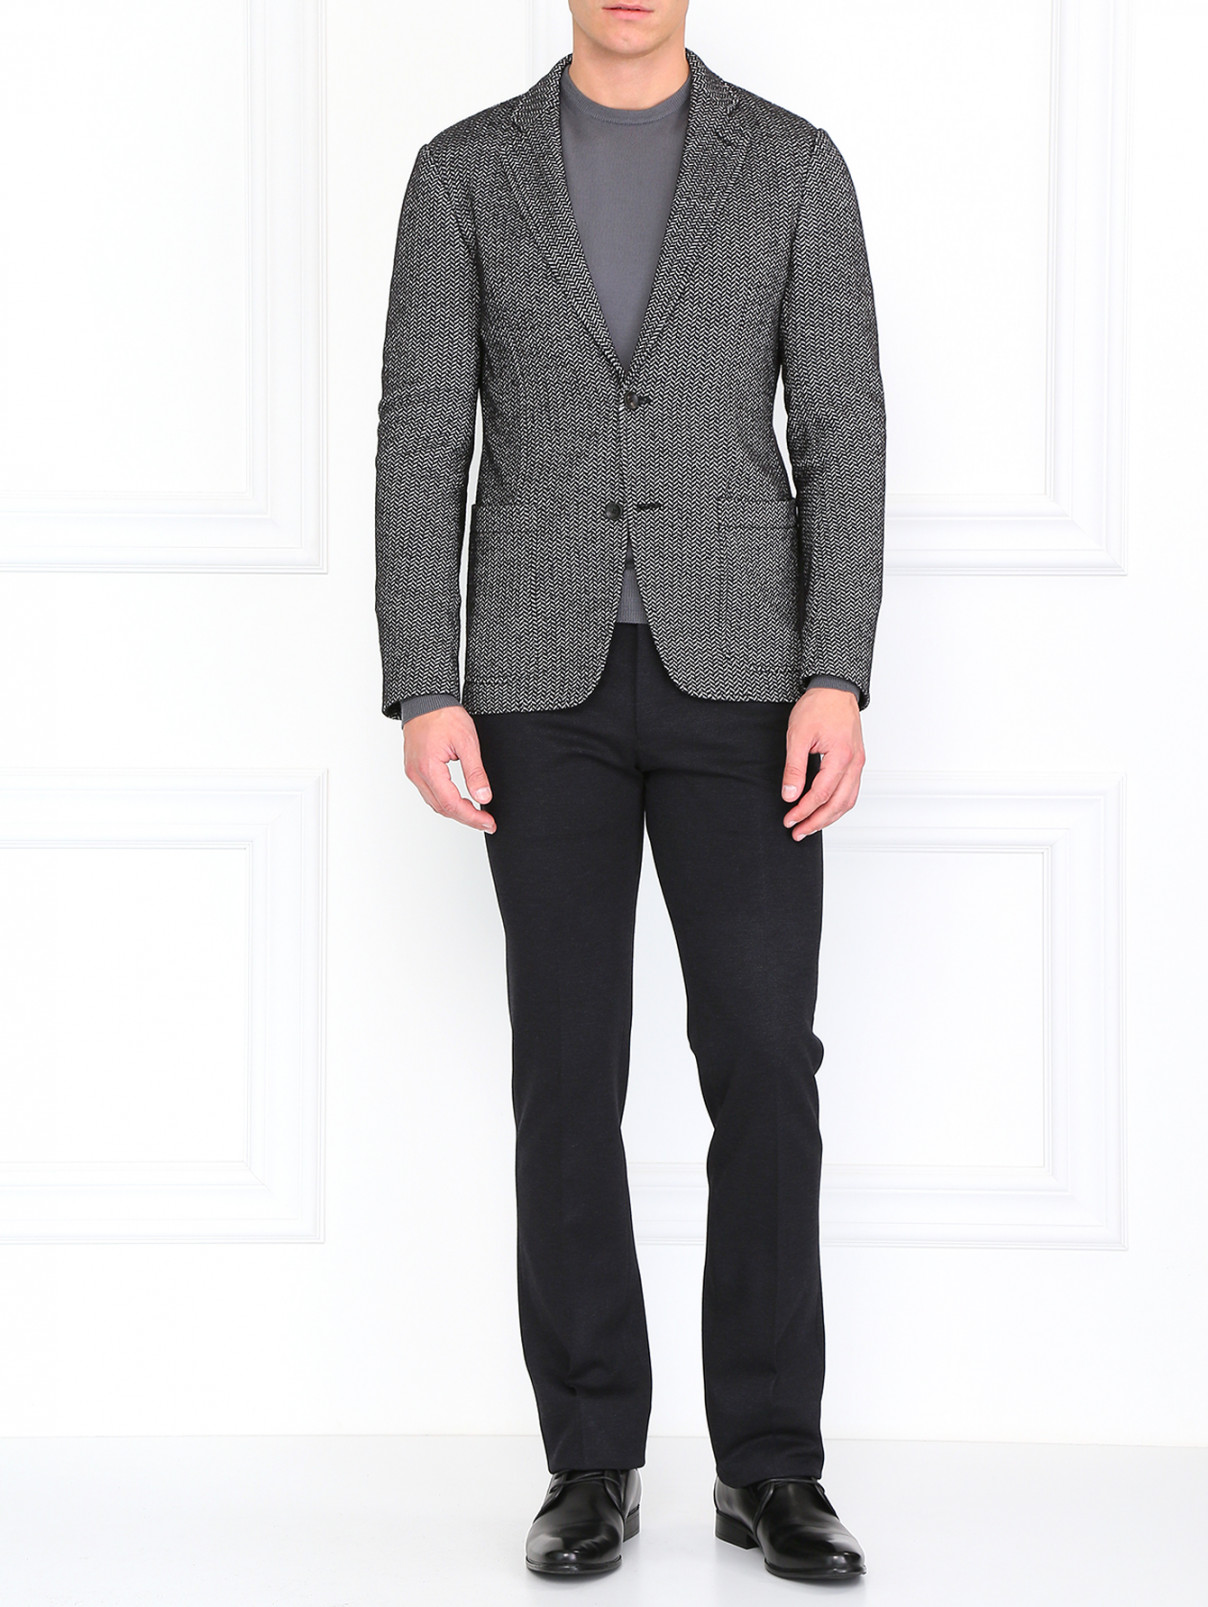 Пиджак из смешанной шерсти с принтом Armani Collezioni  –  Модель Общий вид  – Цвет:  Серый